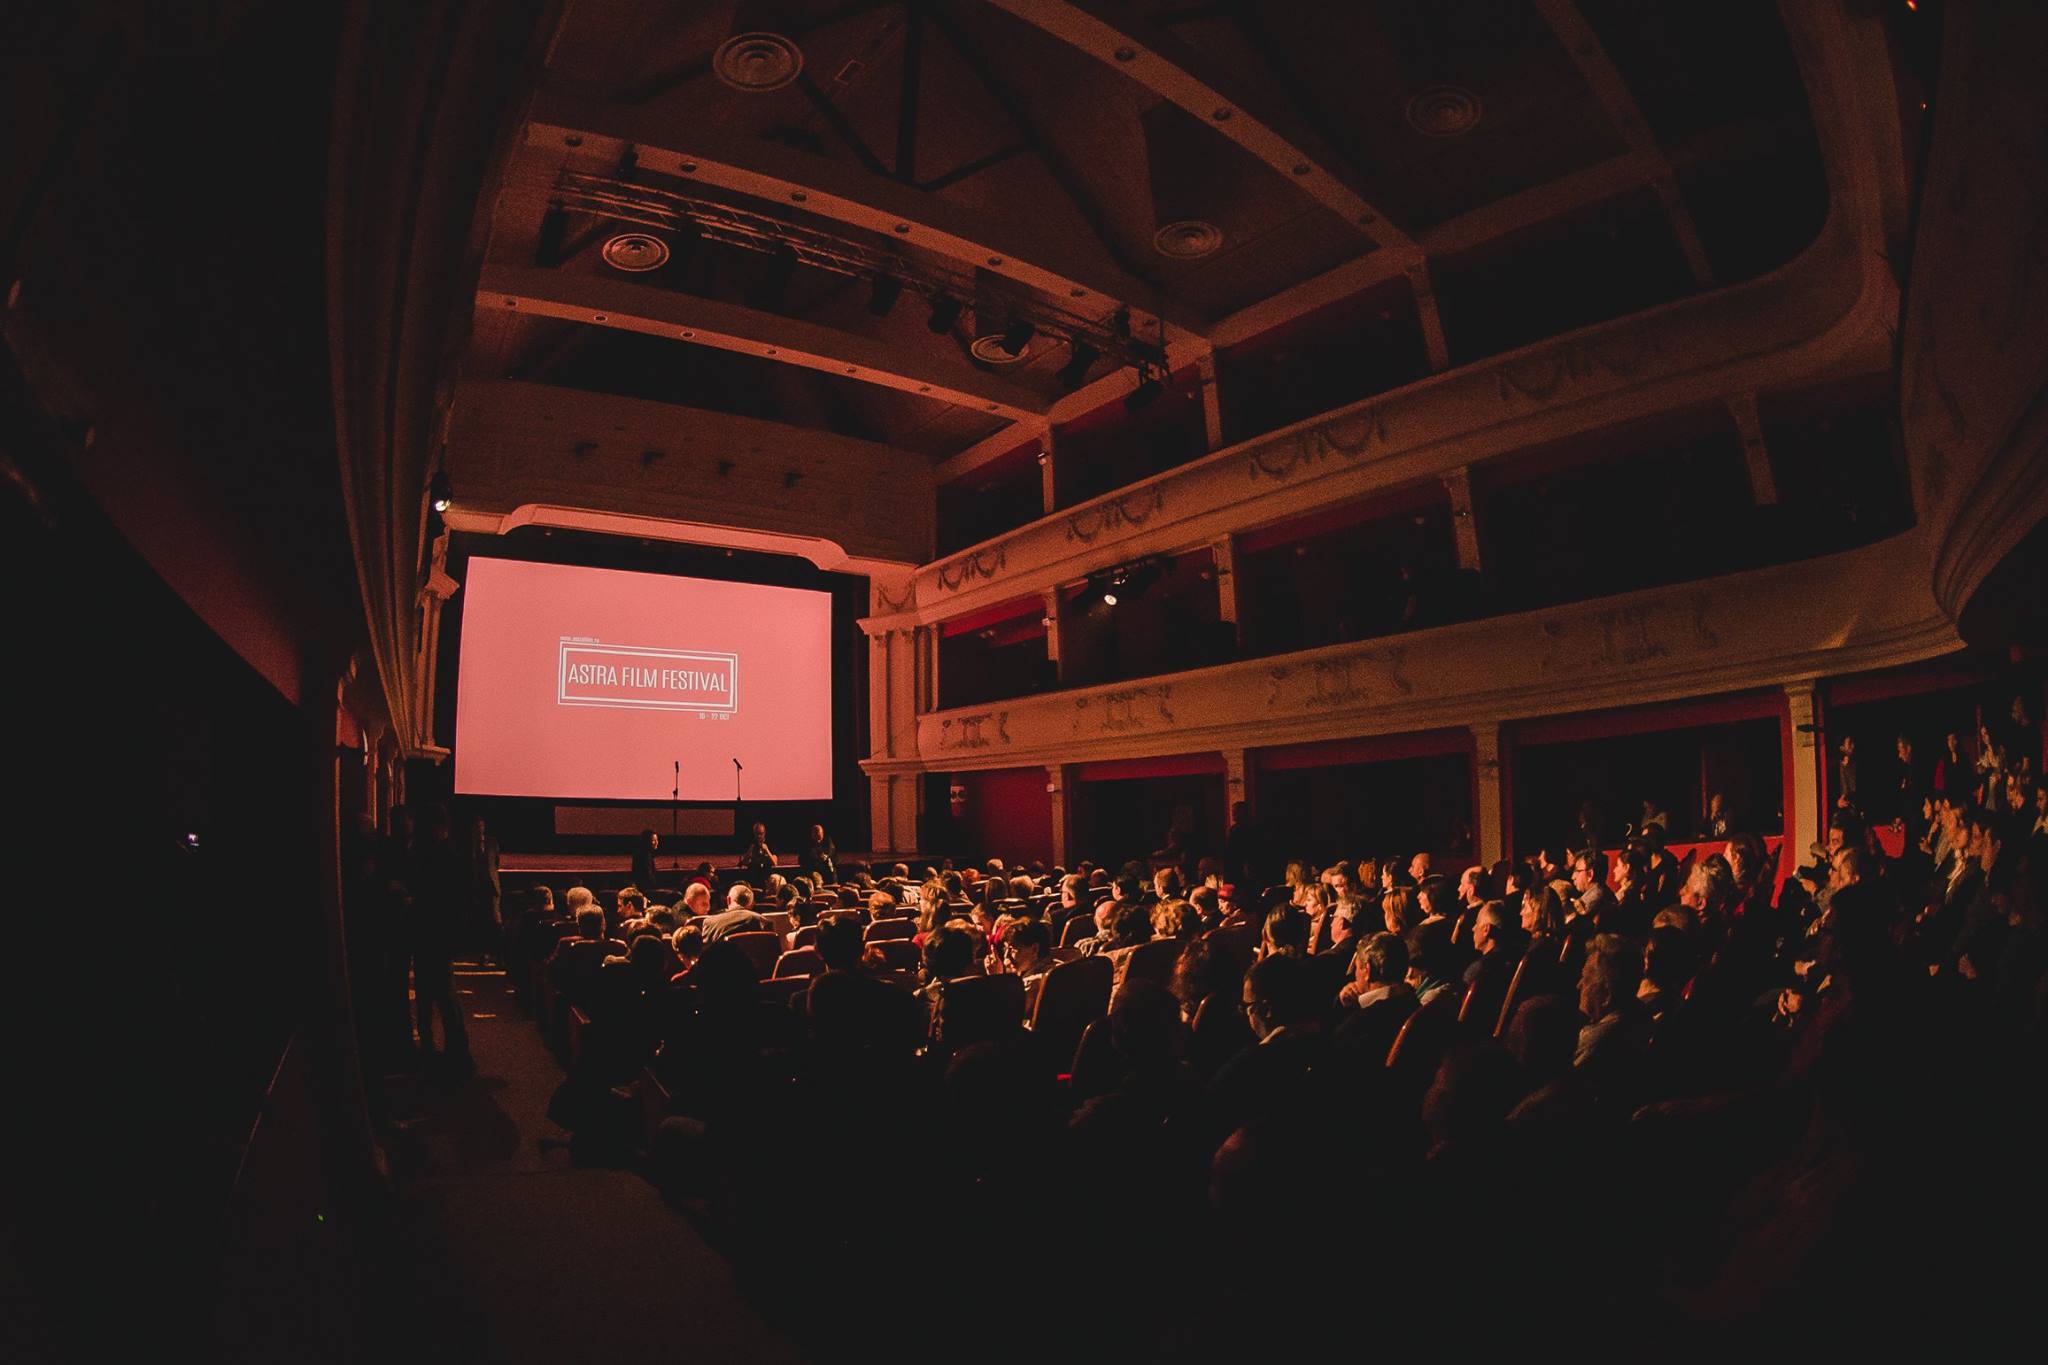 EXCLUSIV | Interviu cu Dumitru Budrala, despre Astra Film Festival 2022: ”Mințile și sufletele noastre au nevoie să fie provocate”